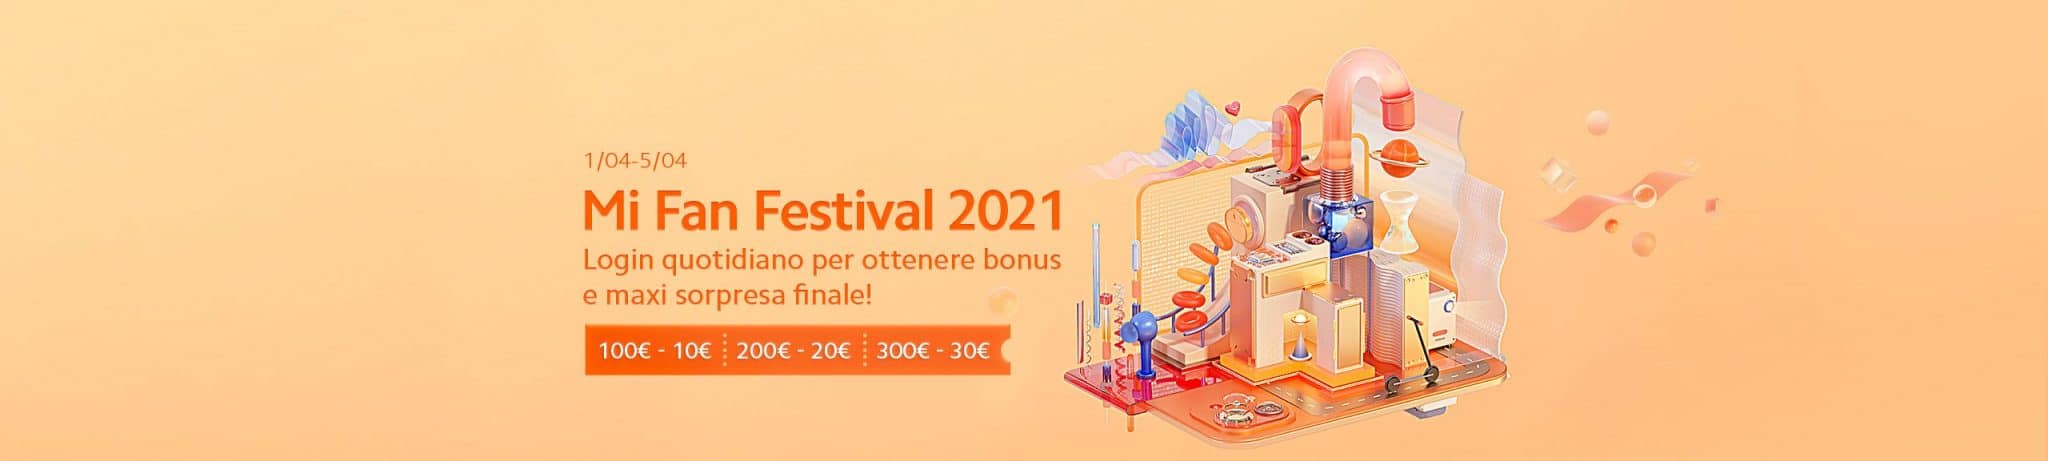 xiaomi mi fan festival 2021